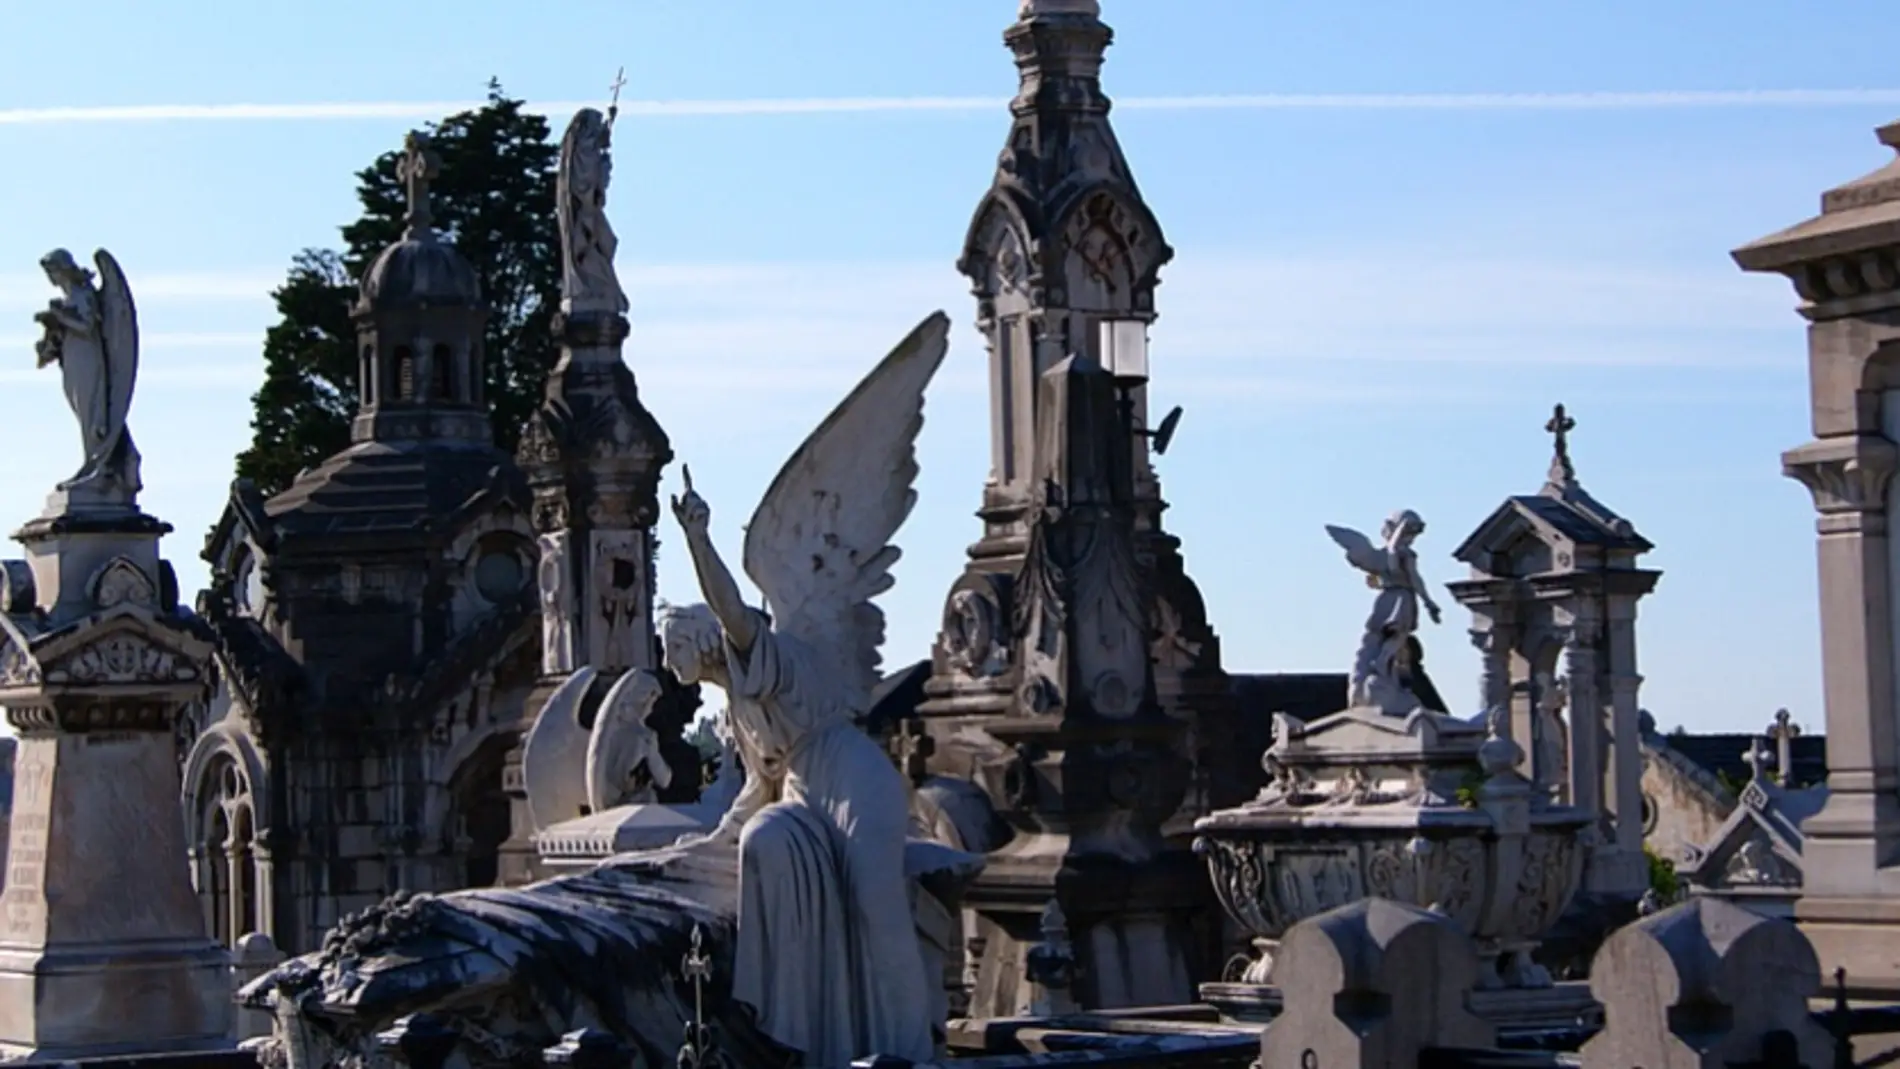 Cementerio municipal de la Carriona. Avilés. Asturias